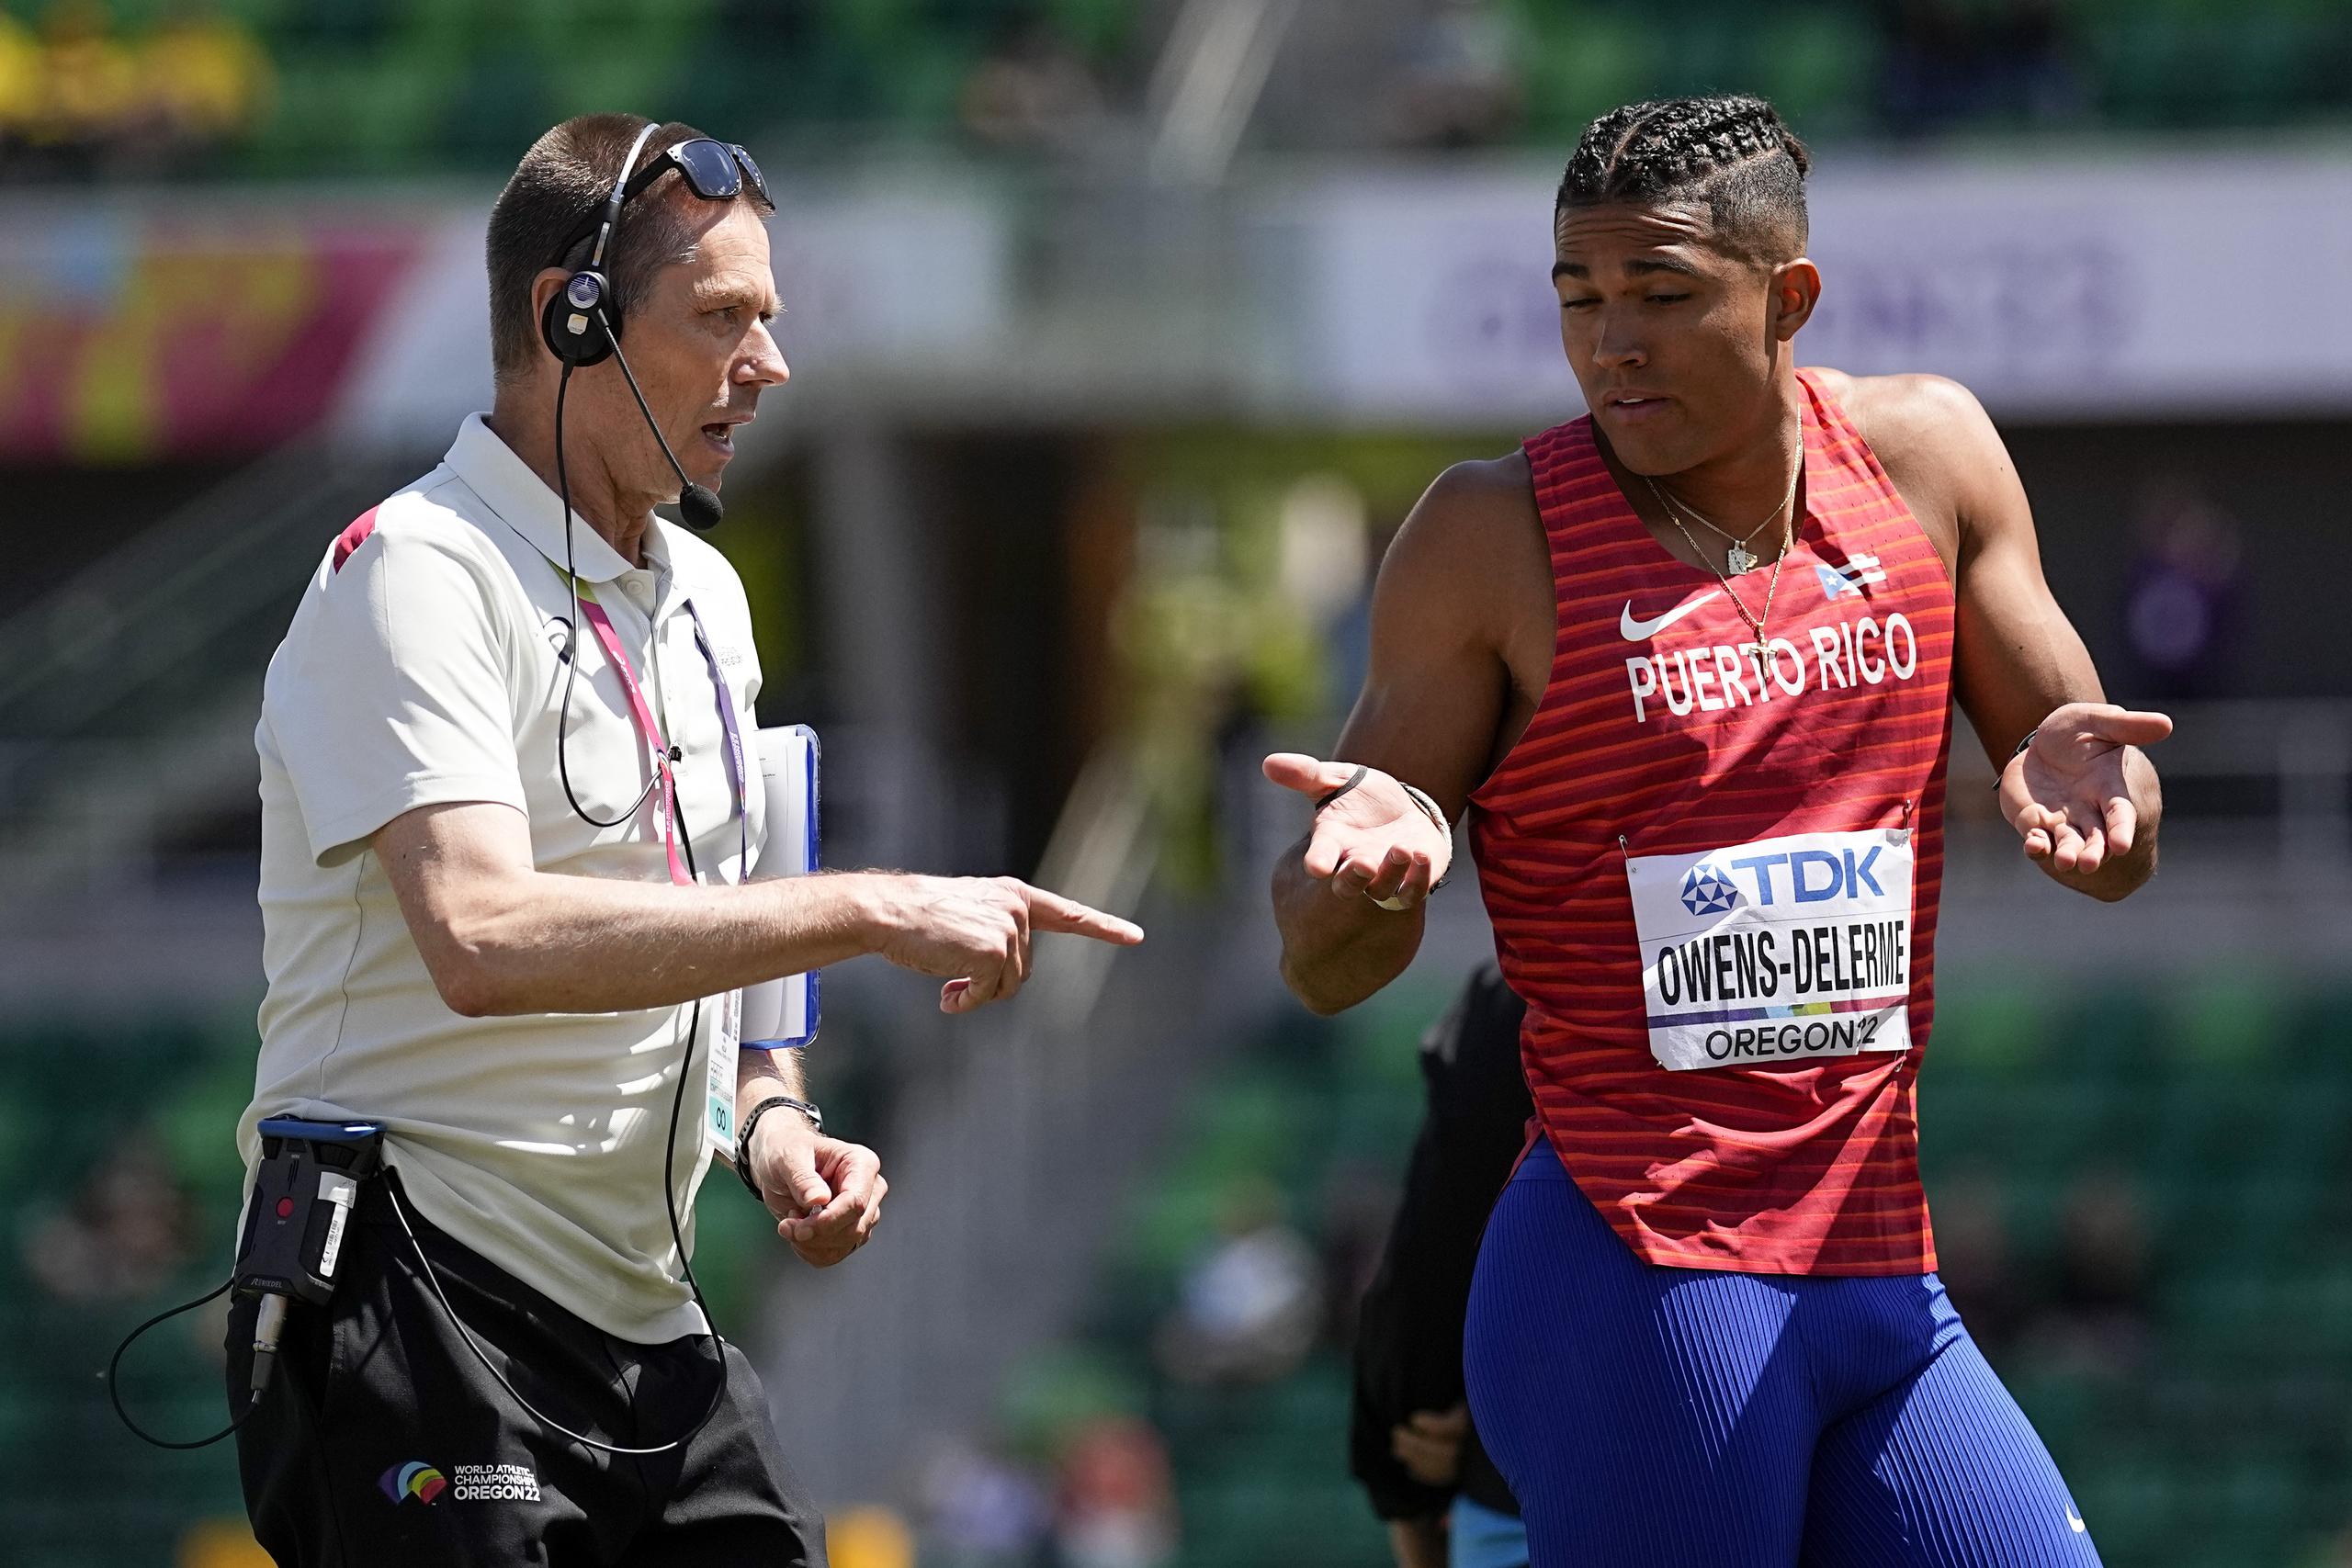 Ayden Owens-Delerme, de Puerto Rico, conversa con un oficial durante uno de los eventos en los que participó durante su gran jornada del sábado en el Mundial de Atletismo.